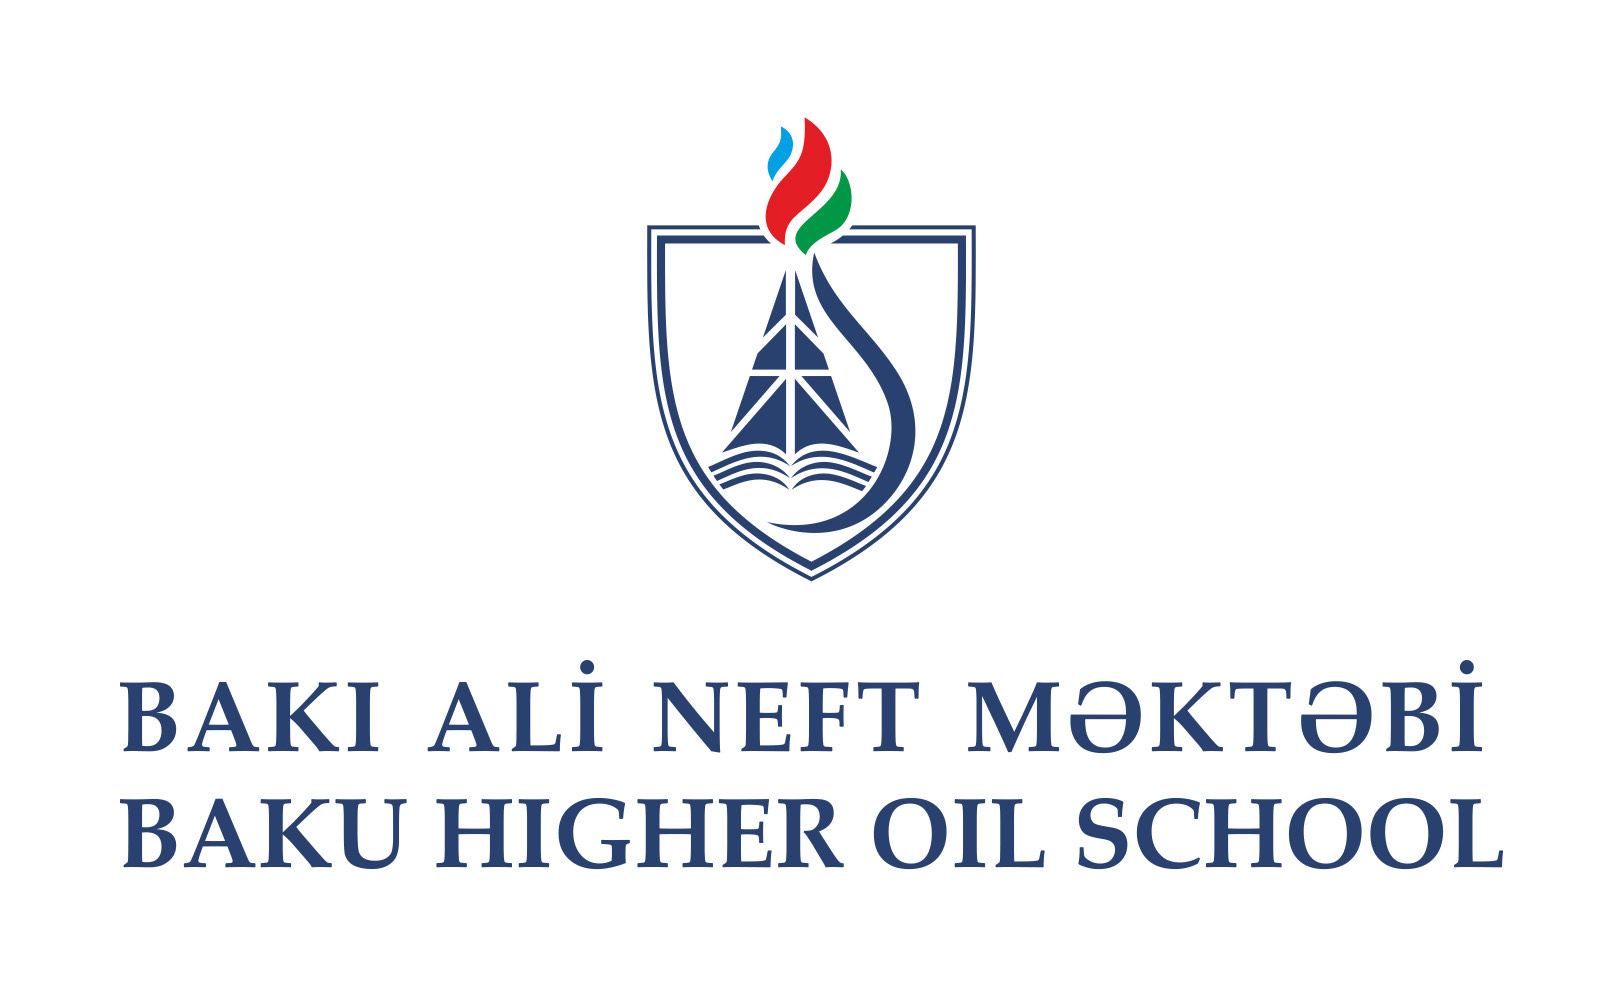 Team of Baku Higher Oil School reaches finals of ‘Cyberwar’ competition